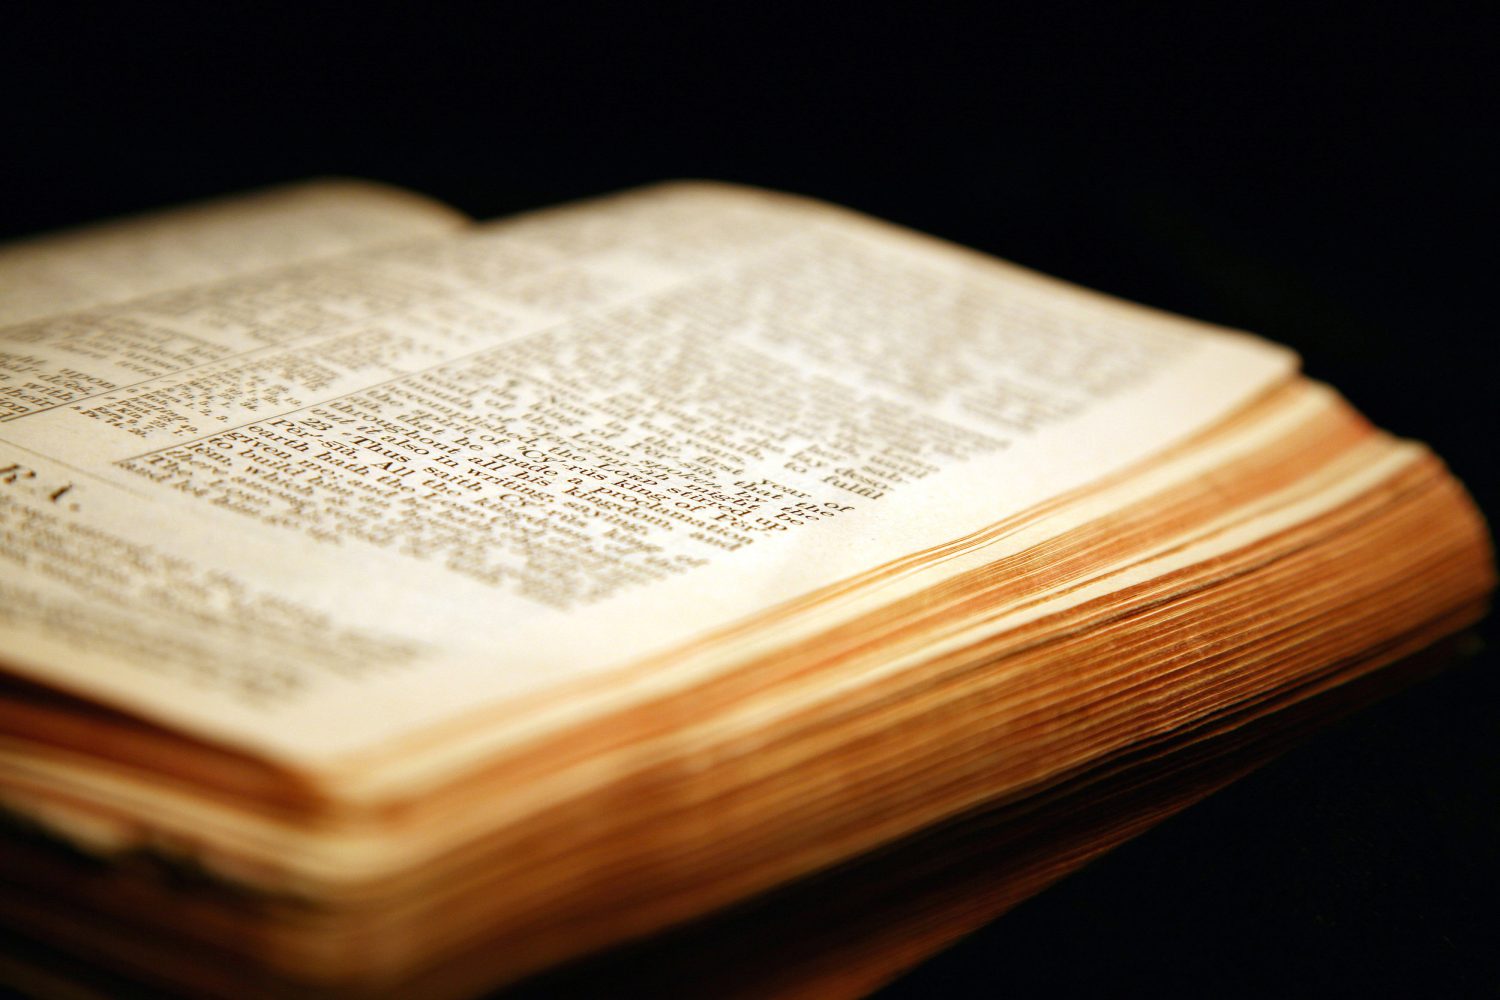 ما هي أفضل طريقة لـ قراءة العهد القديم؟ هل نقرأ أسفاره بصورة انتقائية (وبأي ترتيب)، أم يجب أن نقرأها بتسلسلها المعهود؟